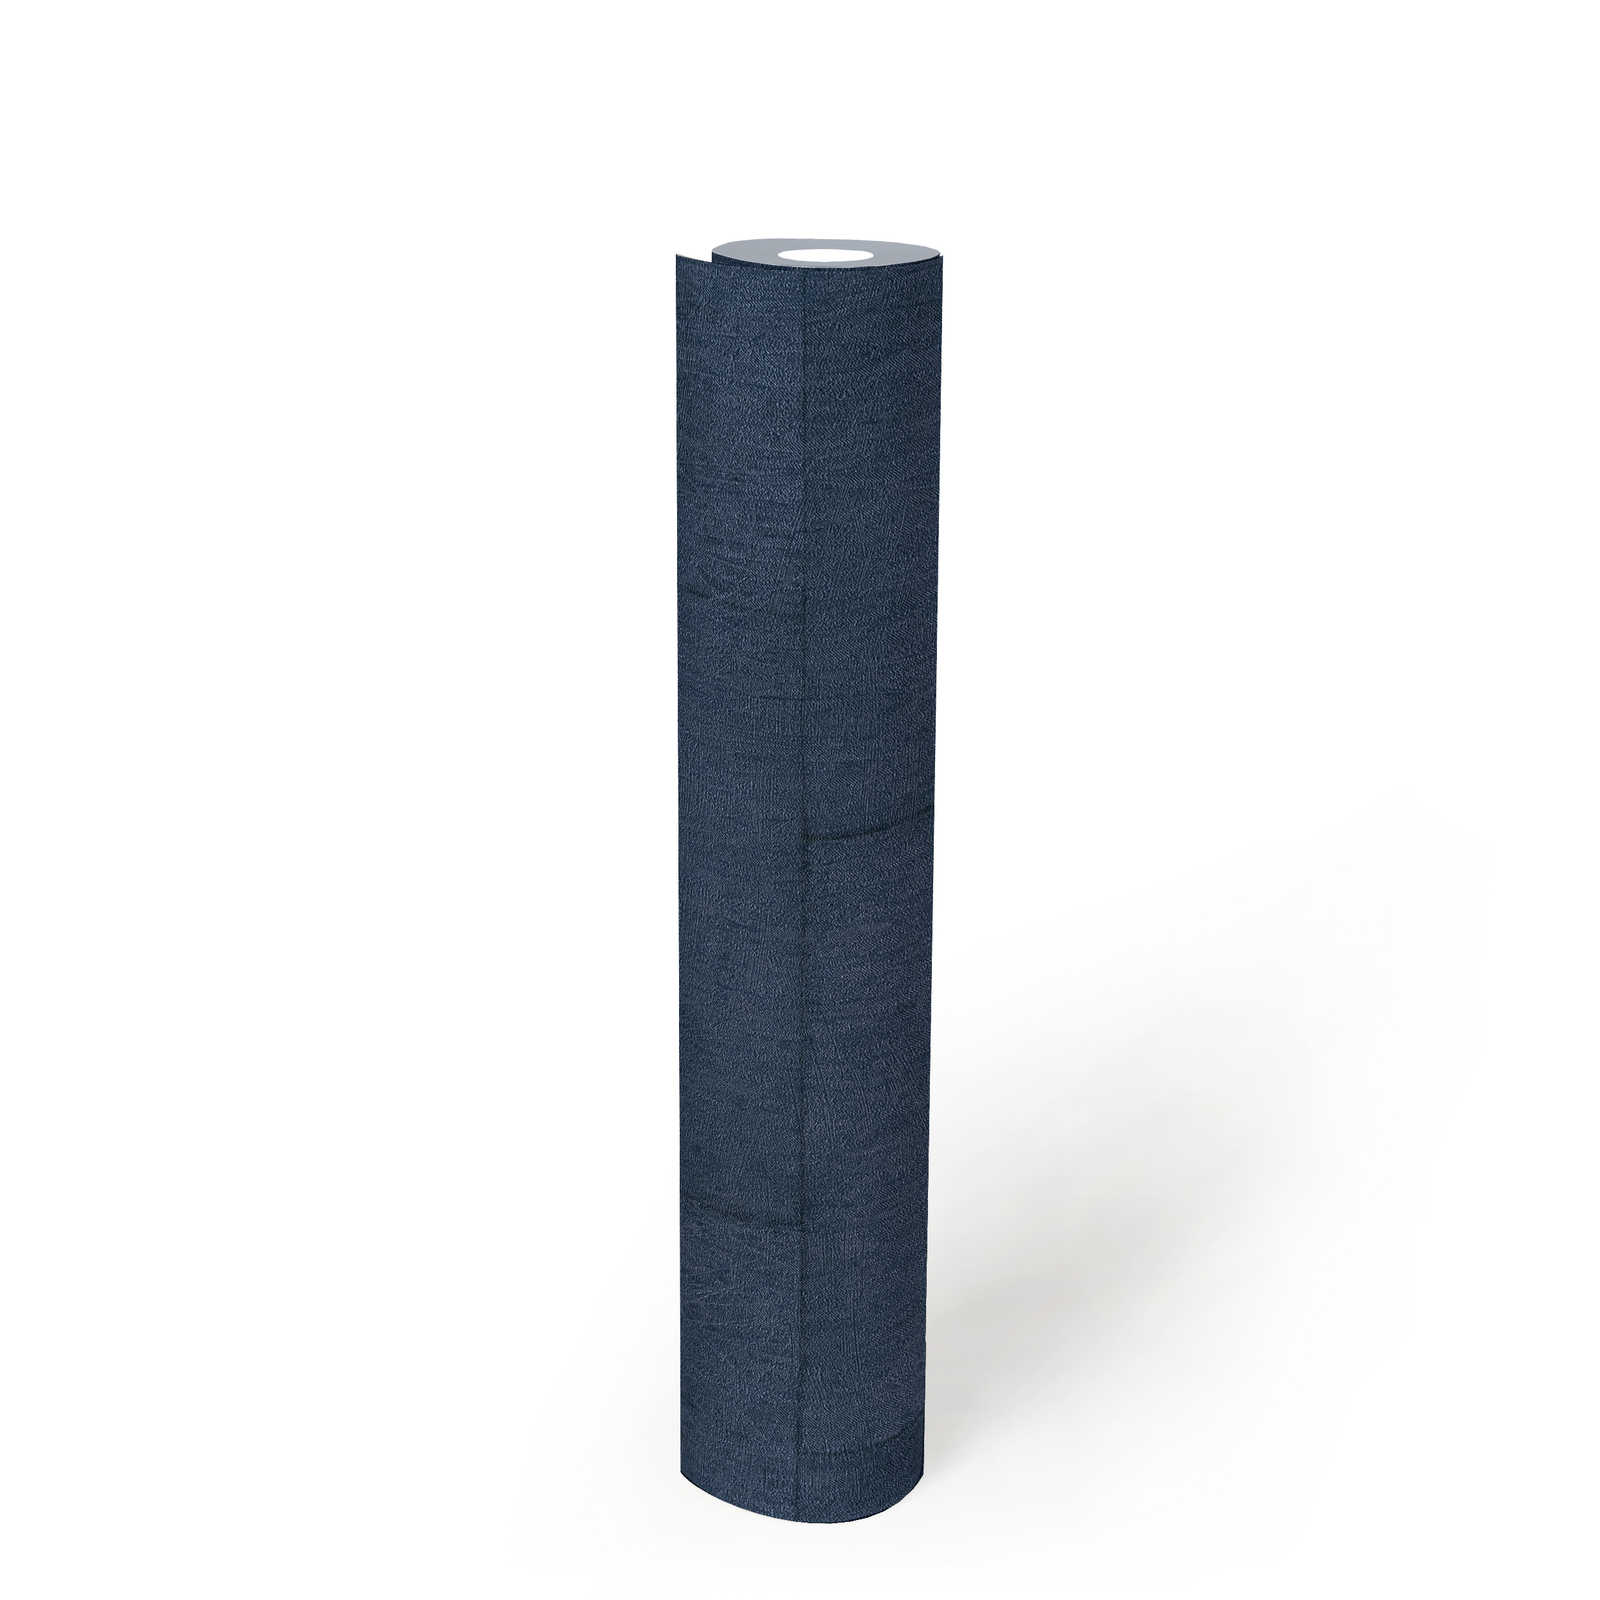             Papier peint pierre bleu foncé avec effet brillant - bleu
        